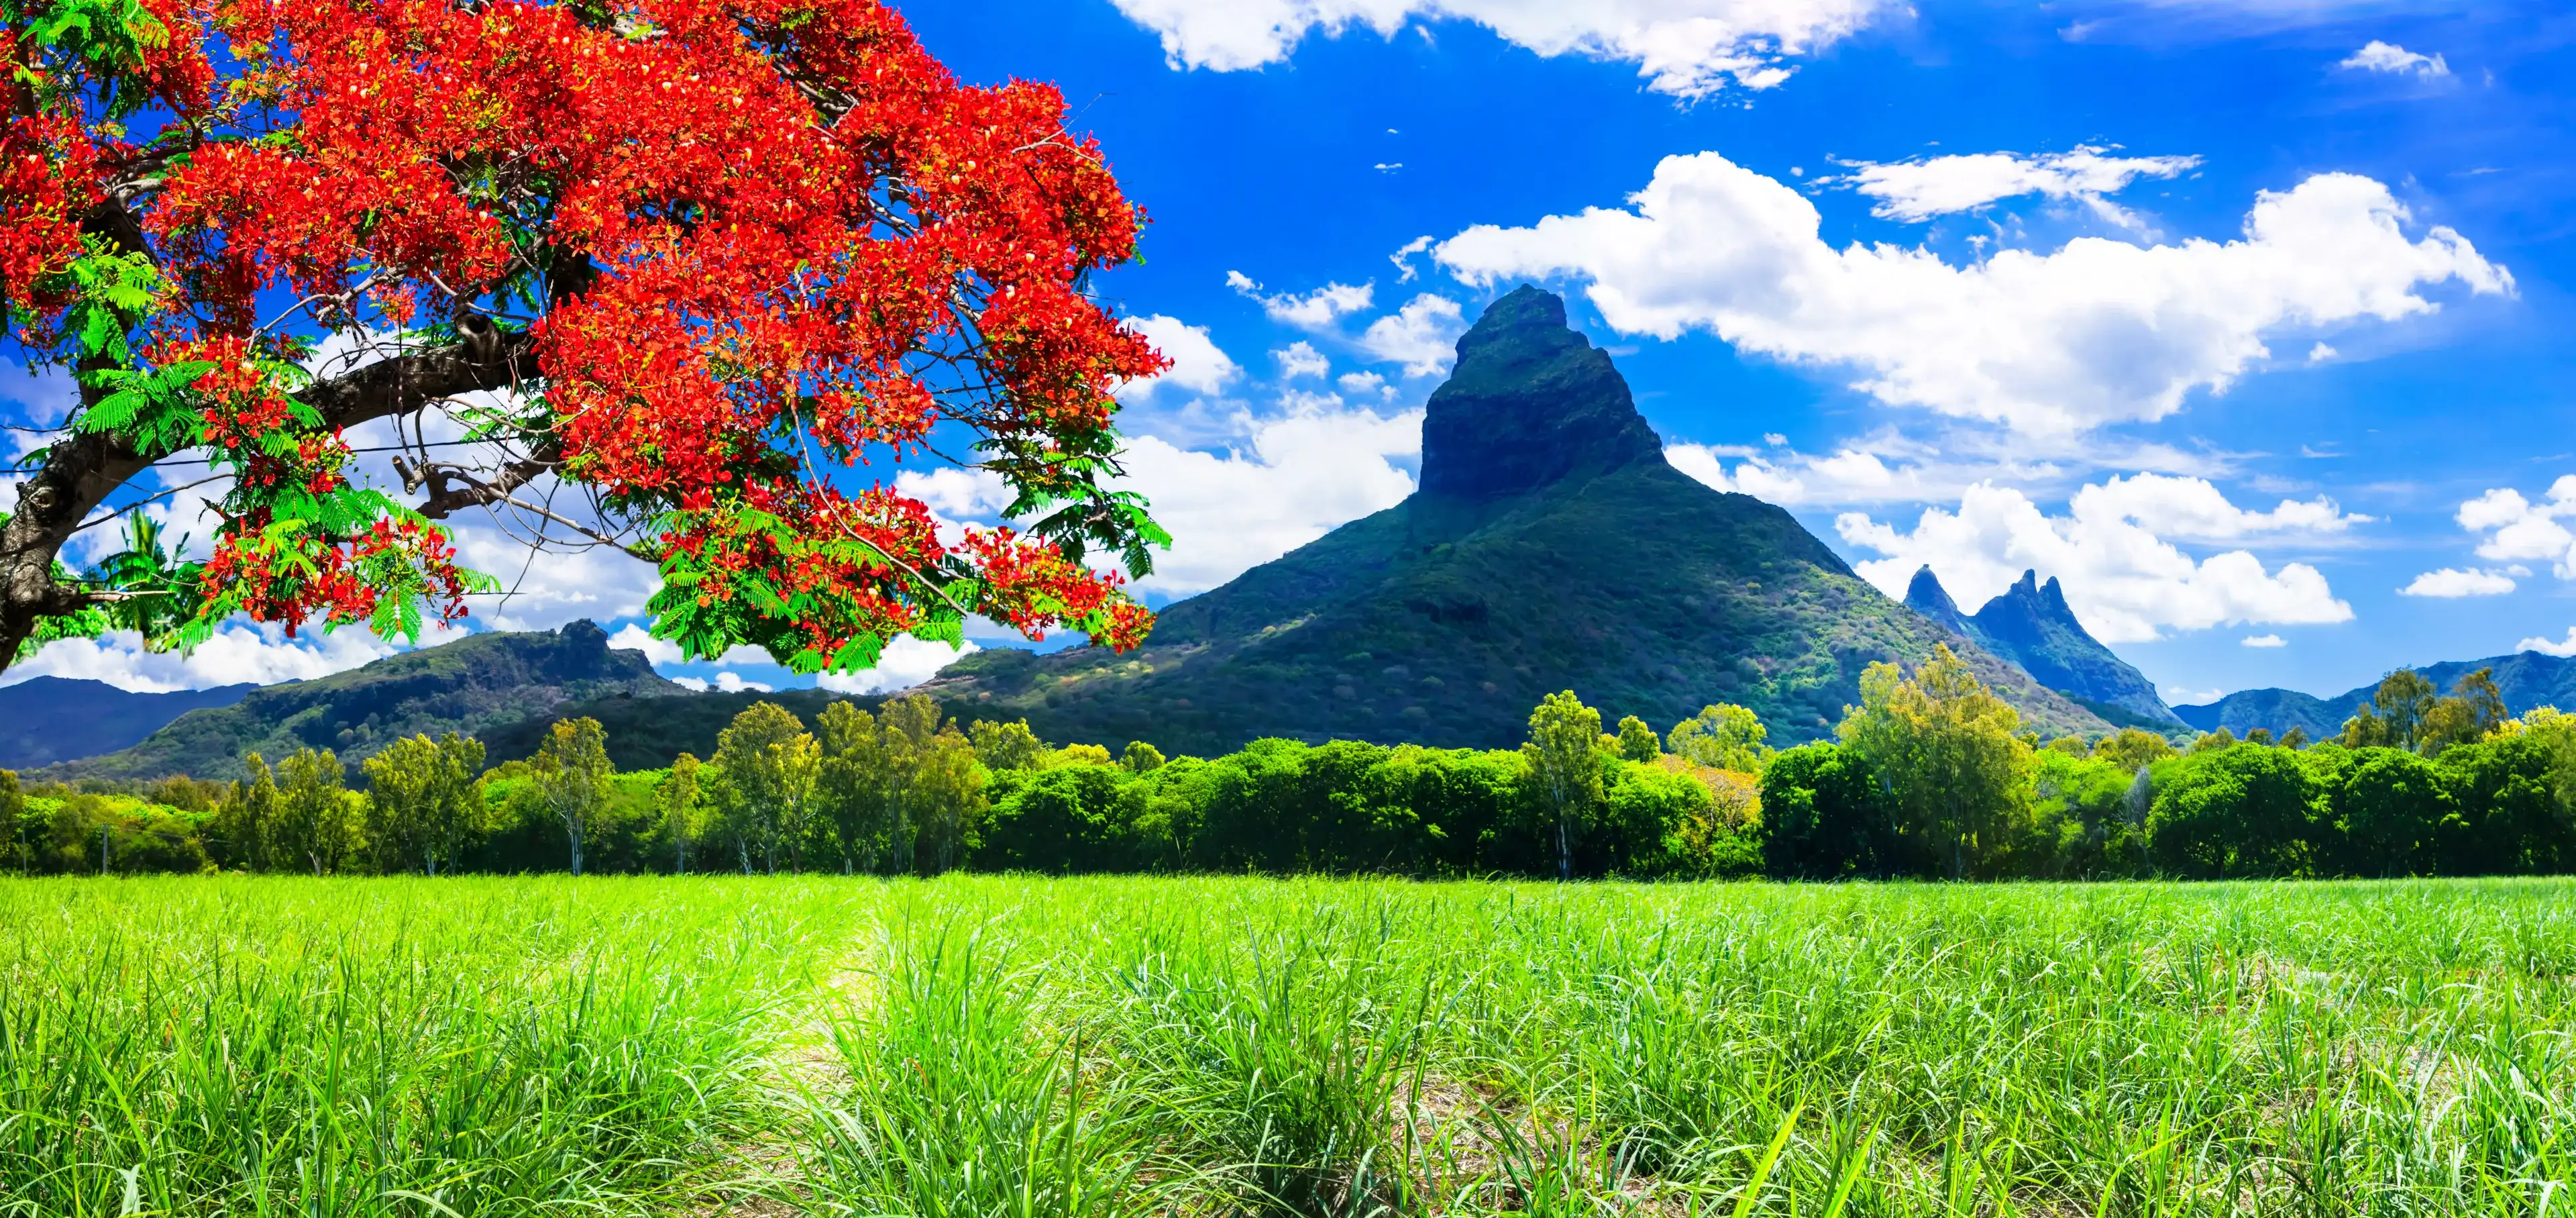 Красивые горные пейзажи острова Маврикий со знаменитым «пламенным деревом»